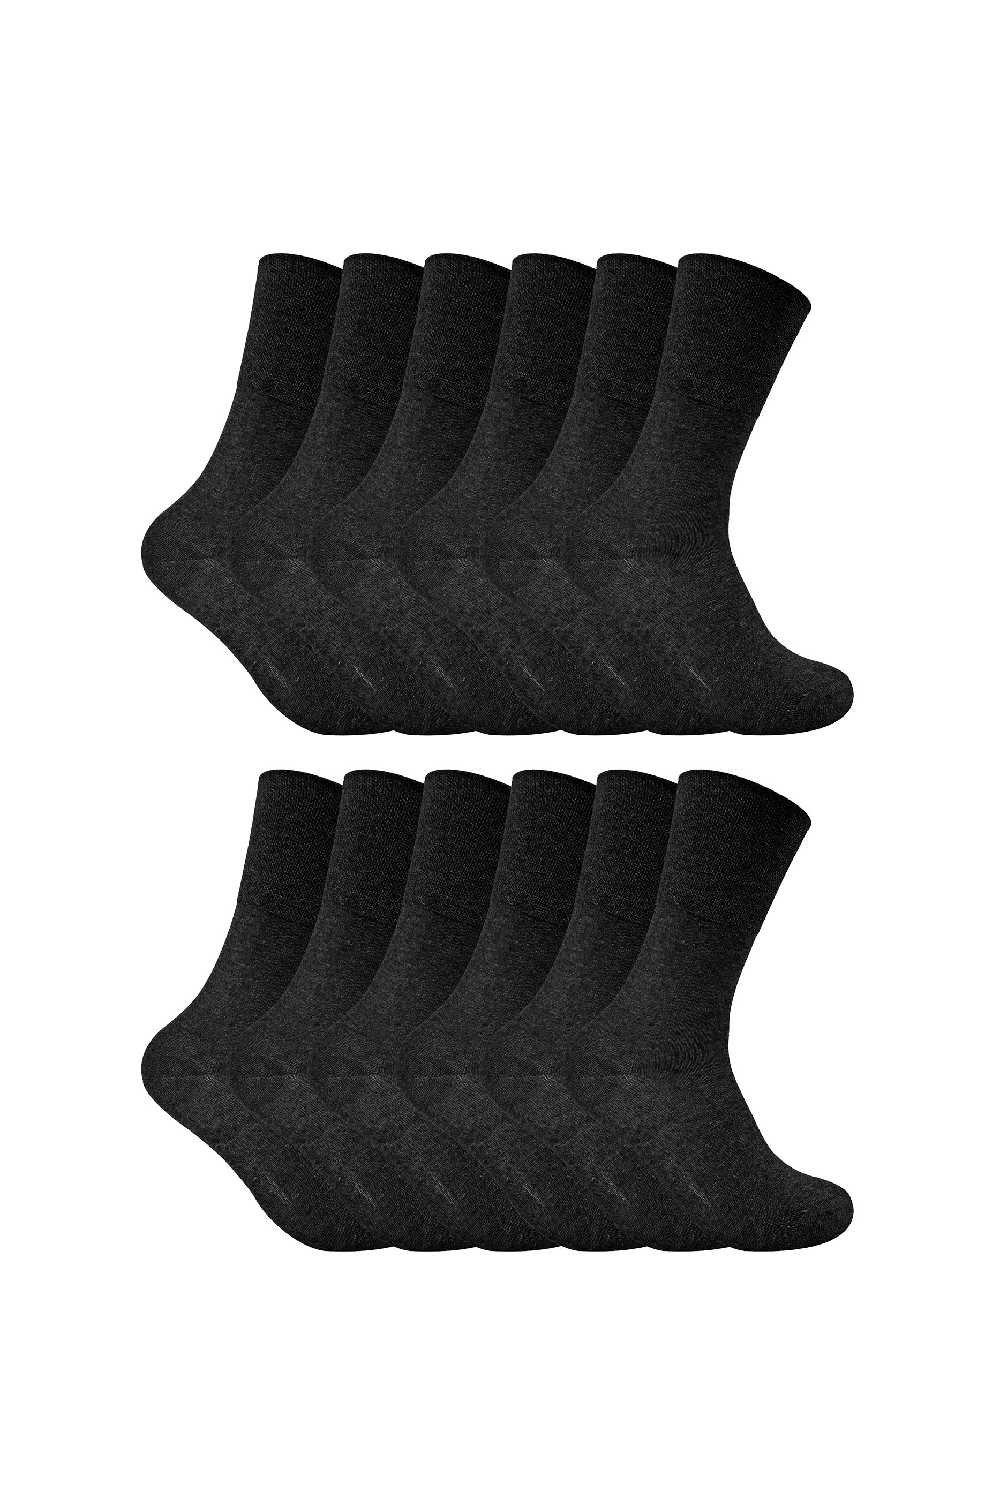 12 Pack Diabetic Soft Top Thermal Socks for Poor Circulation